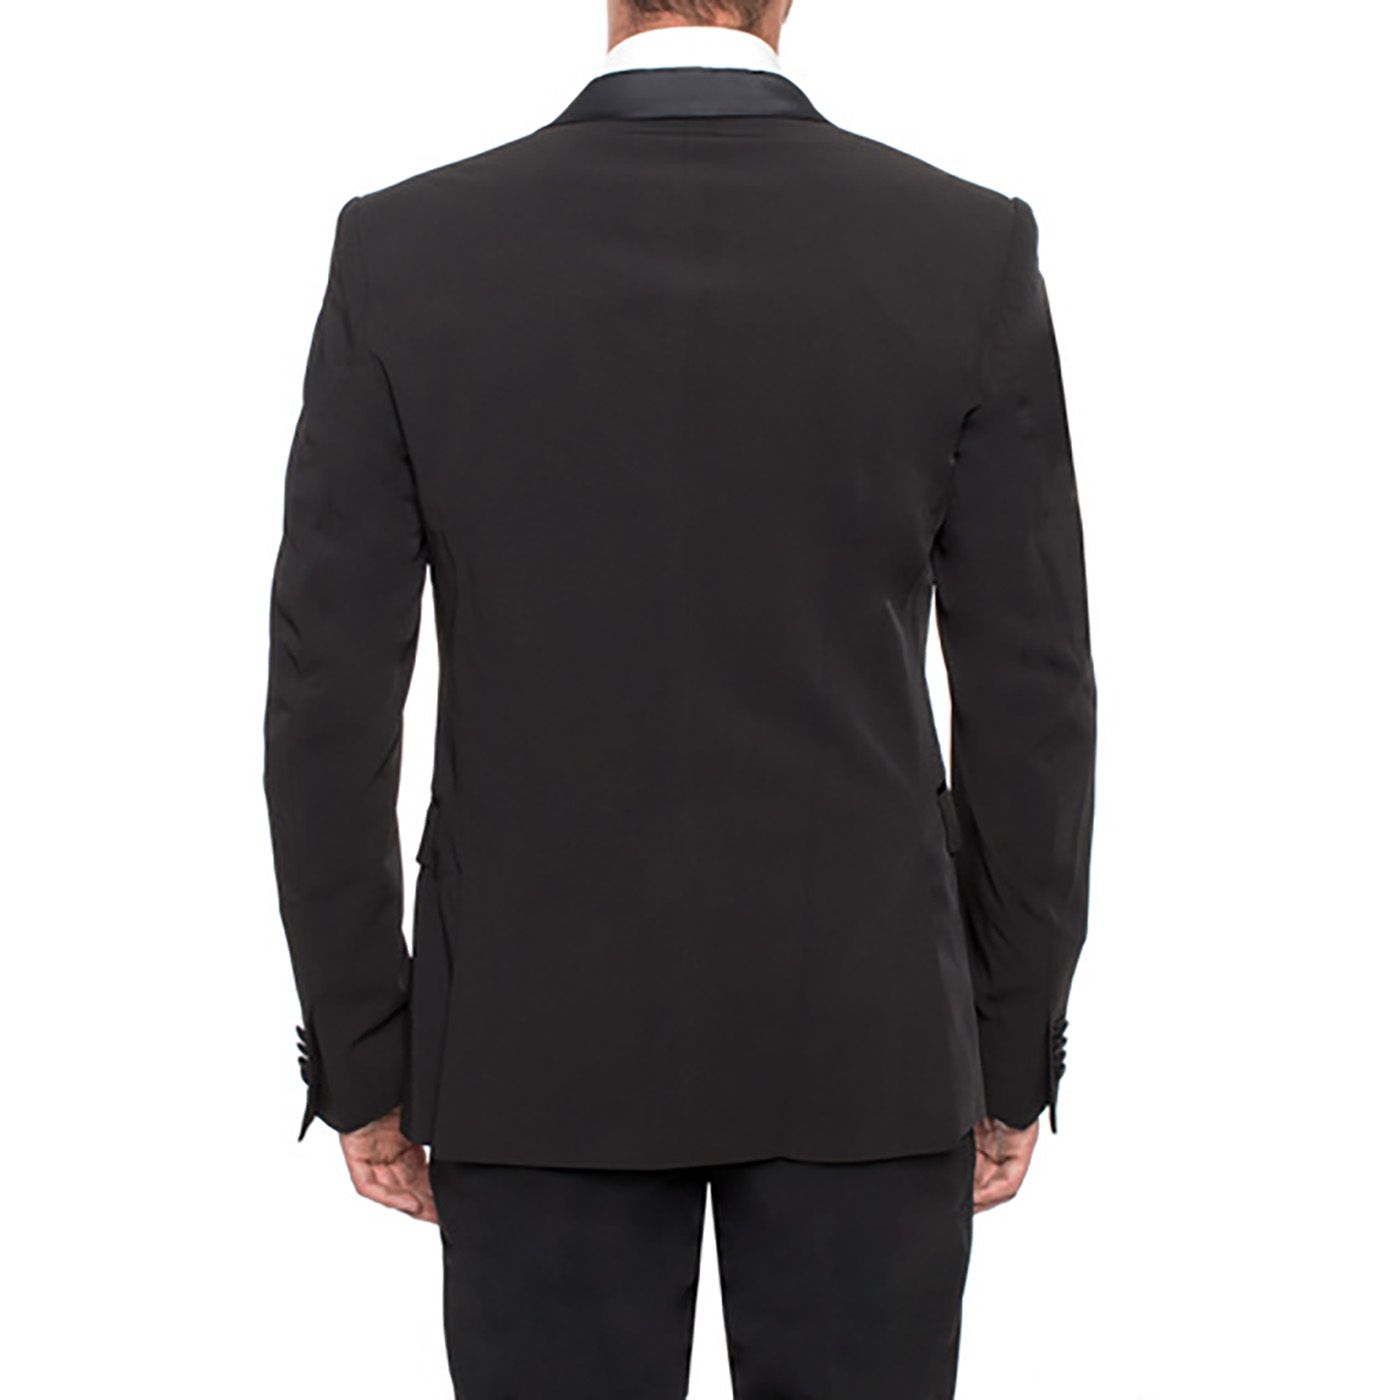 Guess 82H200-A996-46 Klassiek en elegant, deze zwarte blazer zal perfect zijn voor een formele look.